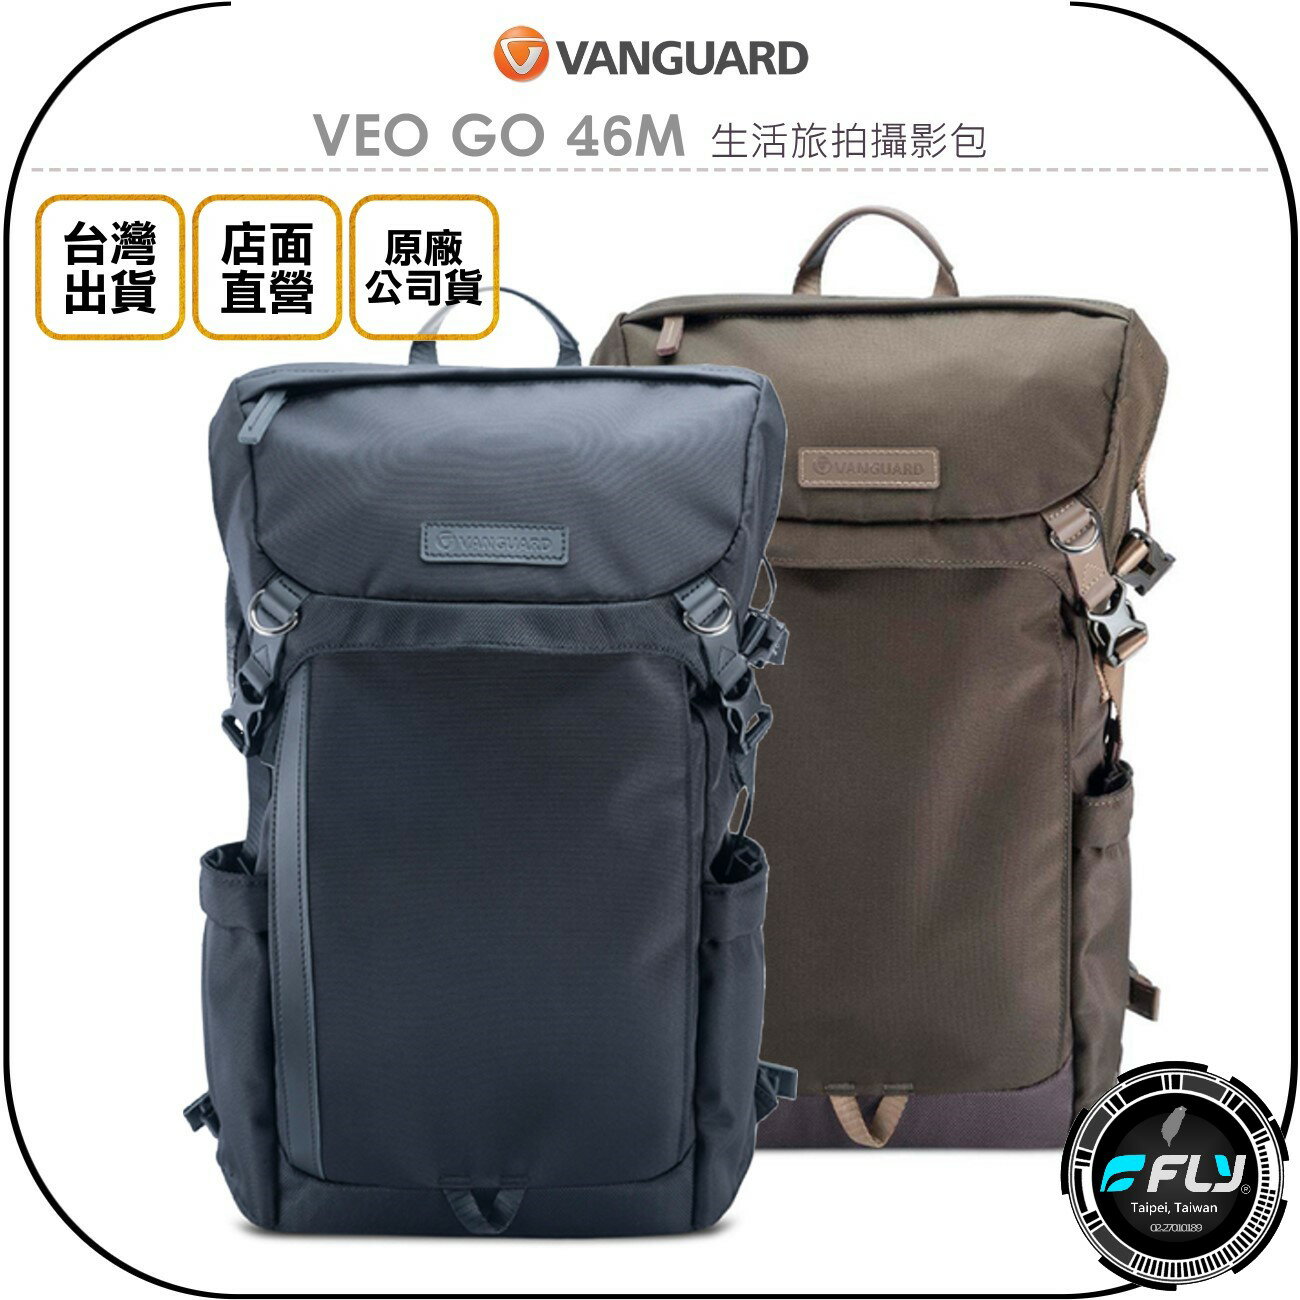 《飛翔無線3C》VANGUARD 精嘉 VEO GO 46M 生活旅拍攝影包◉公司貨◉雙肩後背包◉單眼相機包